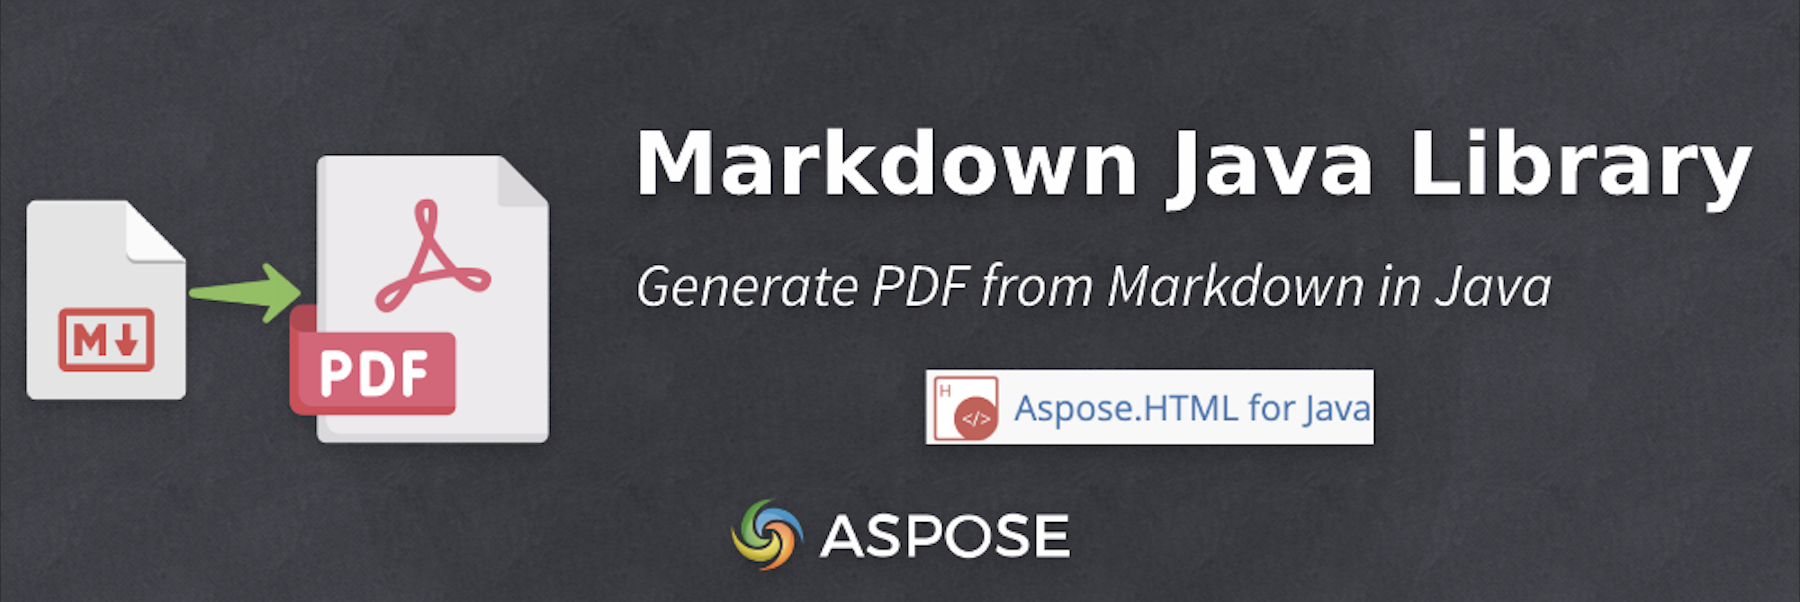 Java で Markdown から PDF を生成する - Markdown から PDF へ